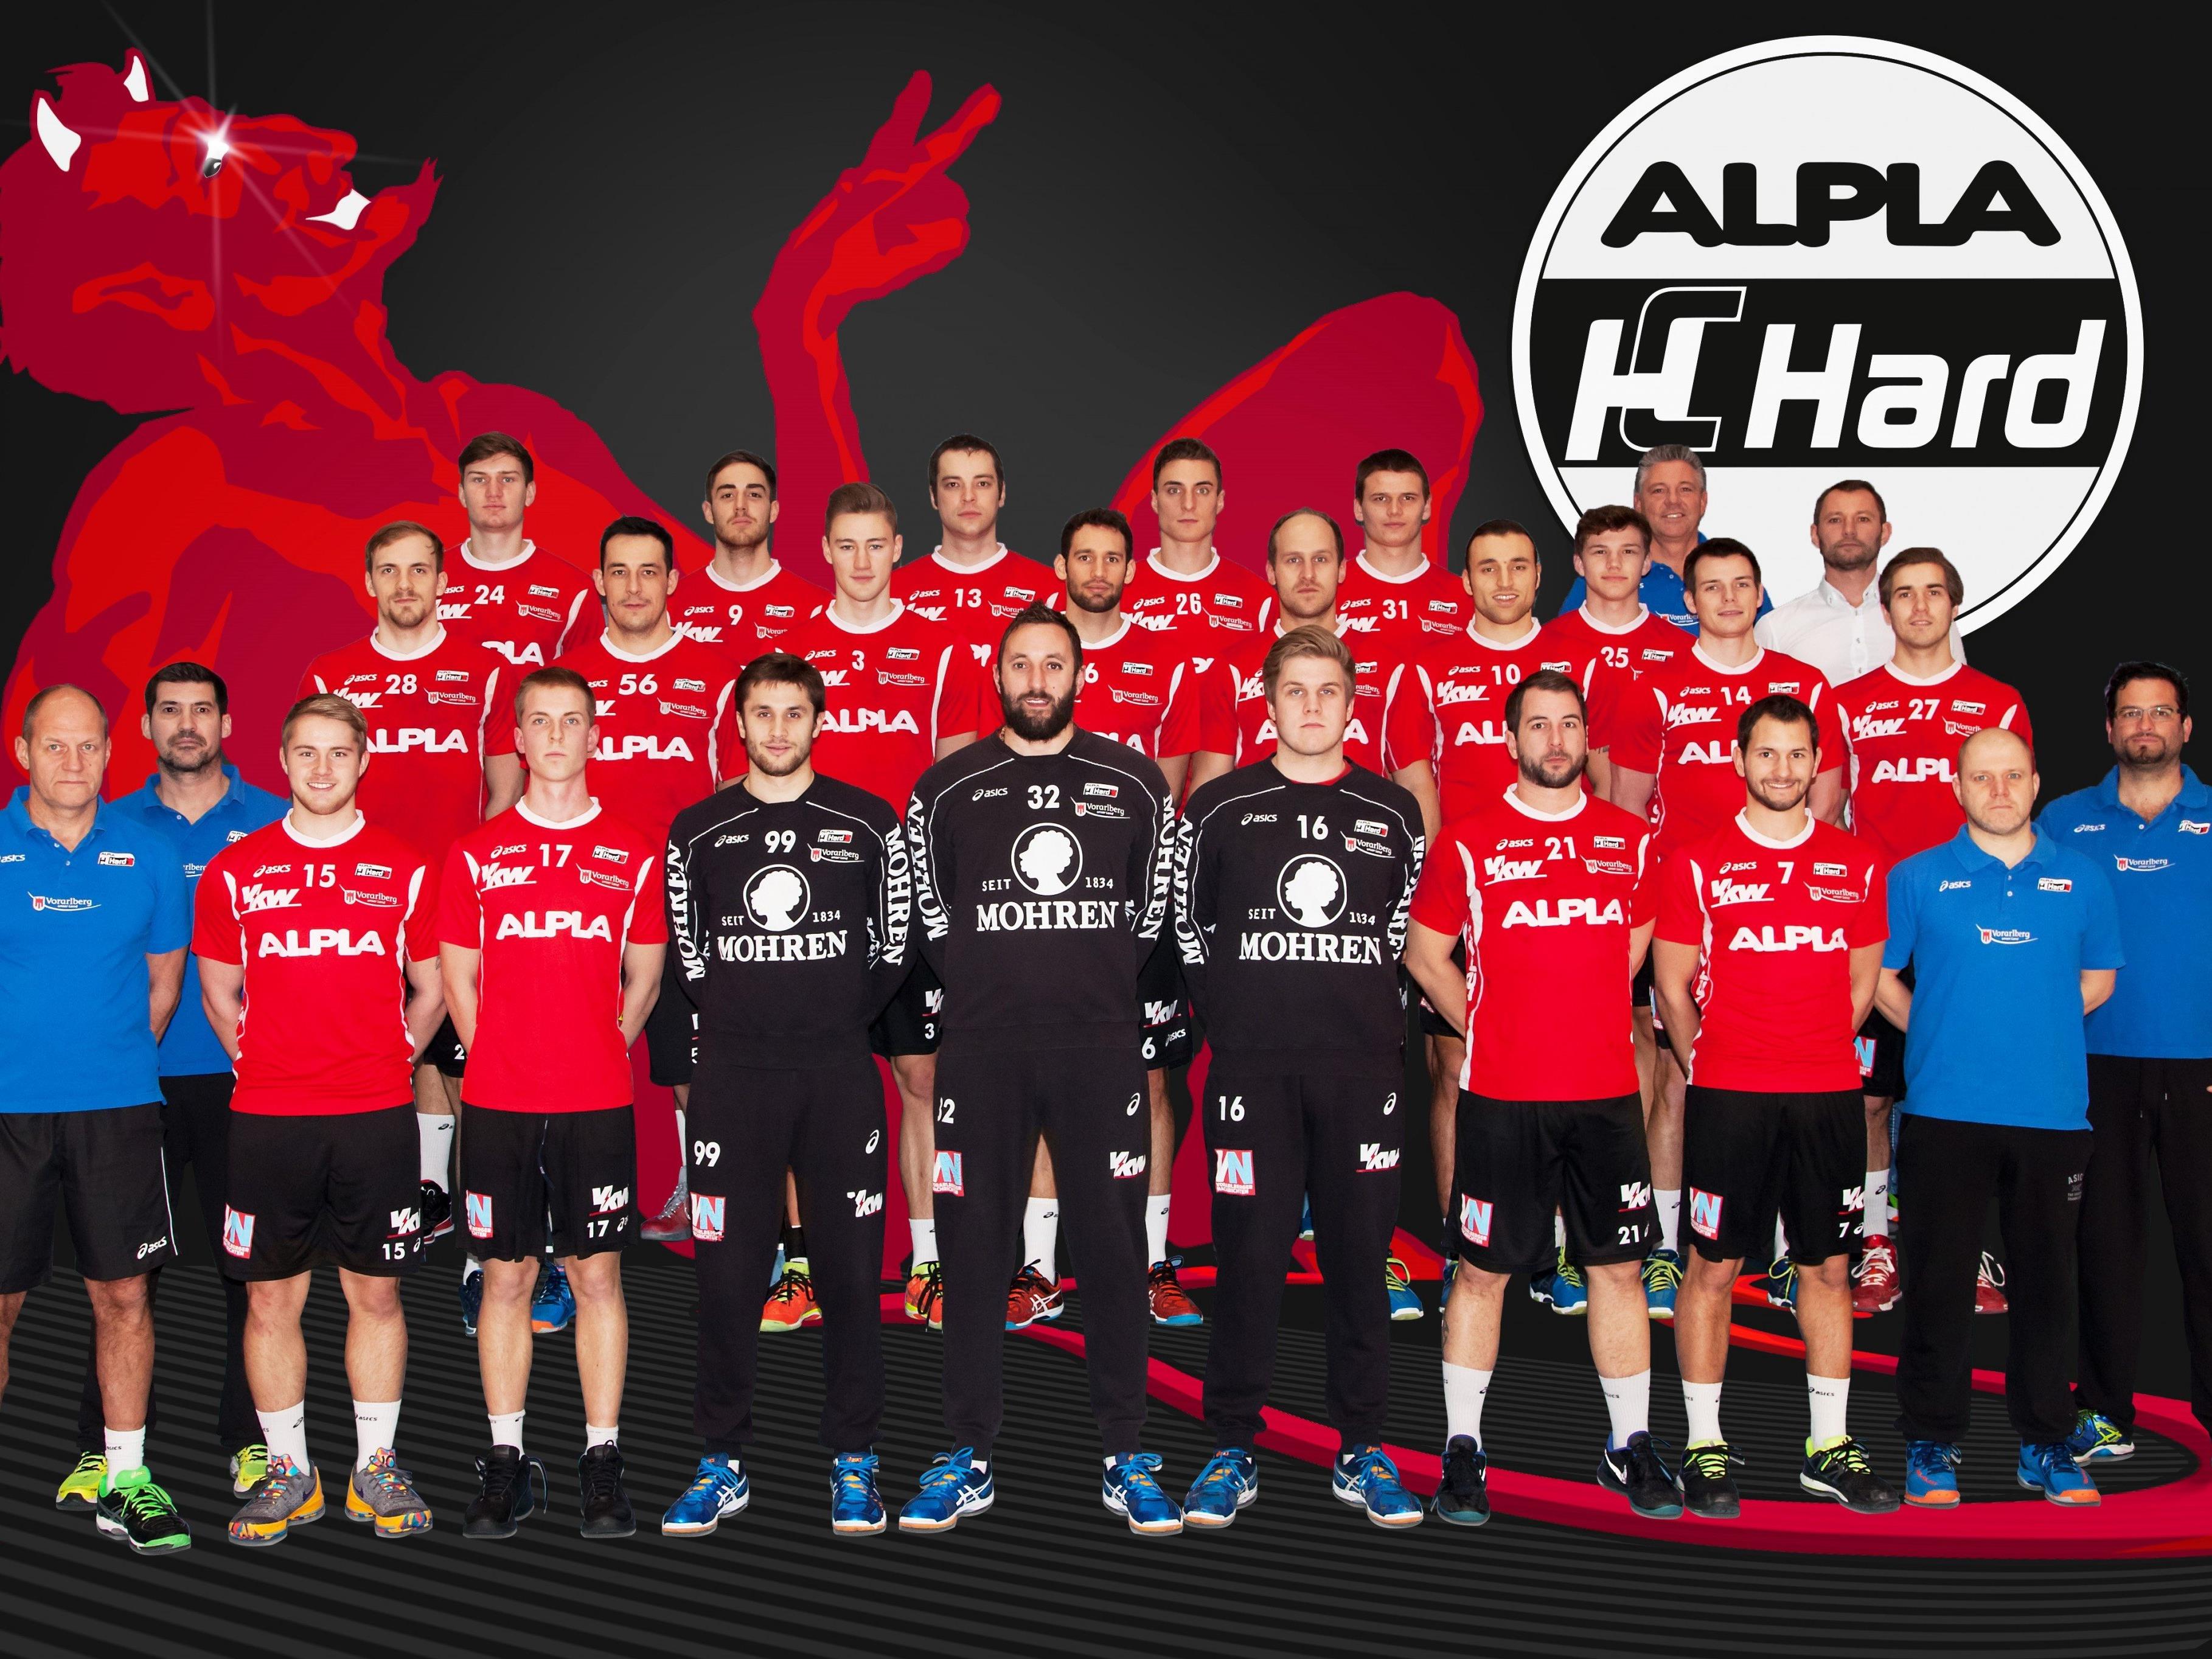 Nach vier Meistertiteln in Serie belegte der ALPLA HC Hard in dieser Saison den dritten Platz.